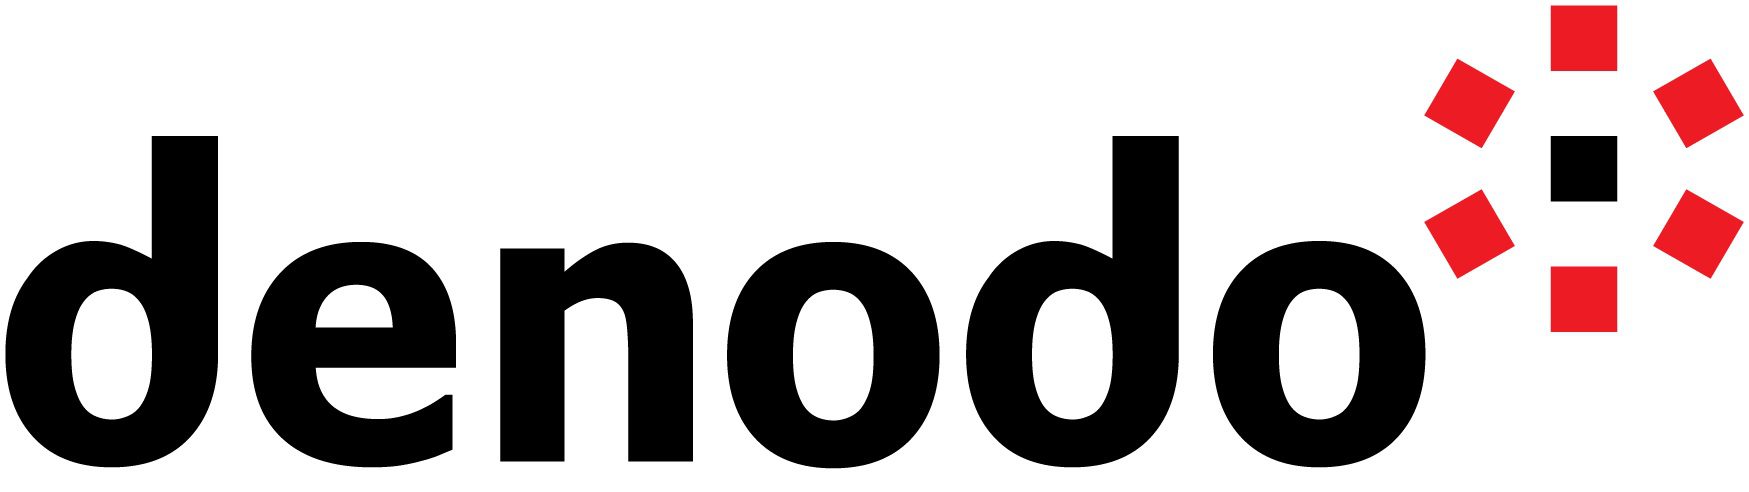 Denodo デモ: 論理アーキテクチャによる将来性のあるデータ管理: データ ファブリックとデータ メッシュ